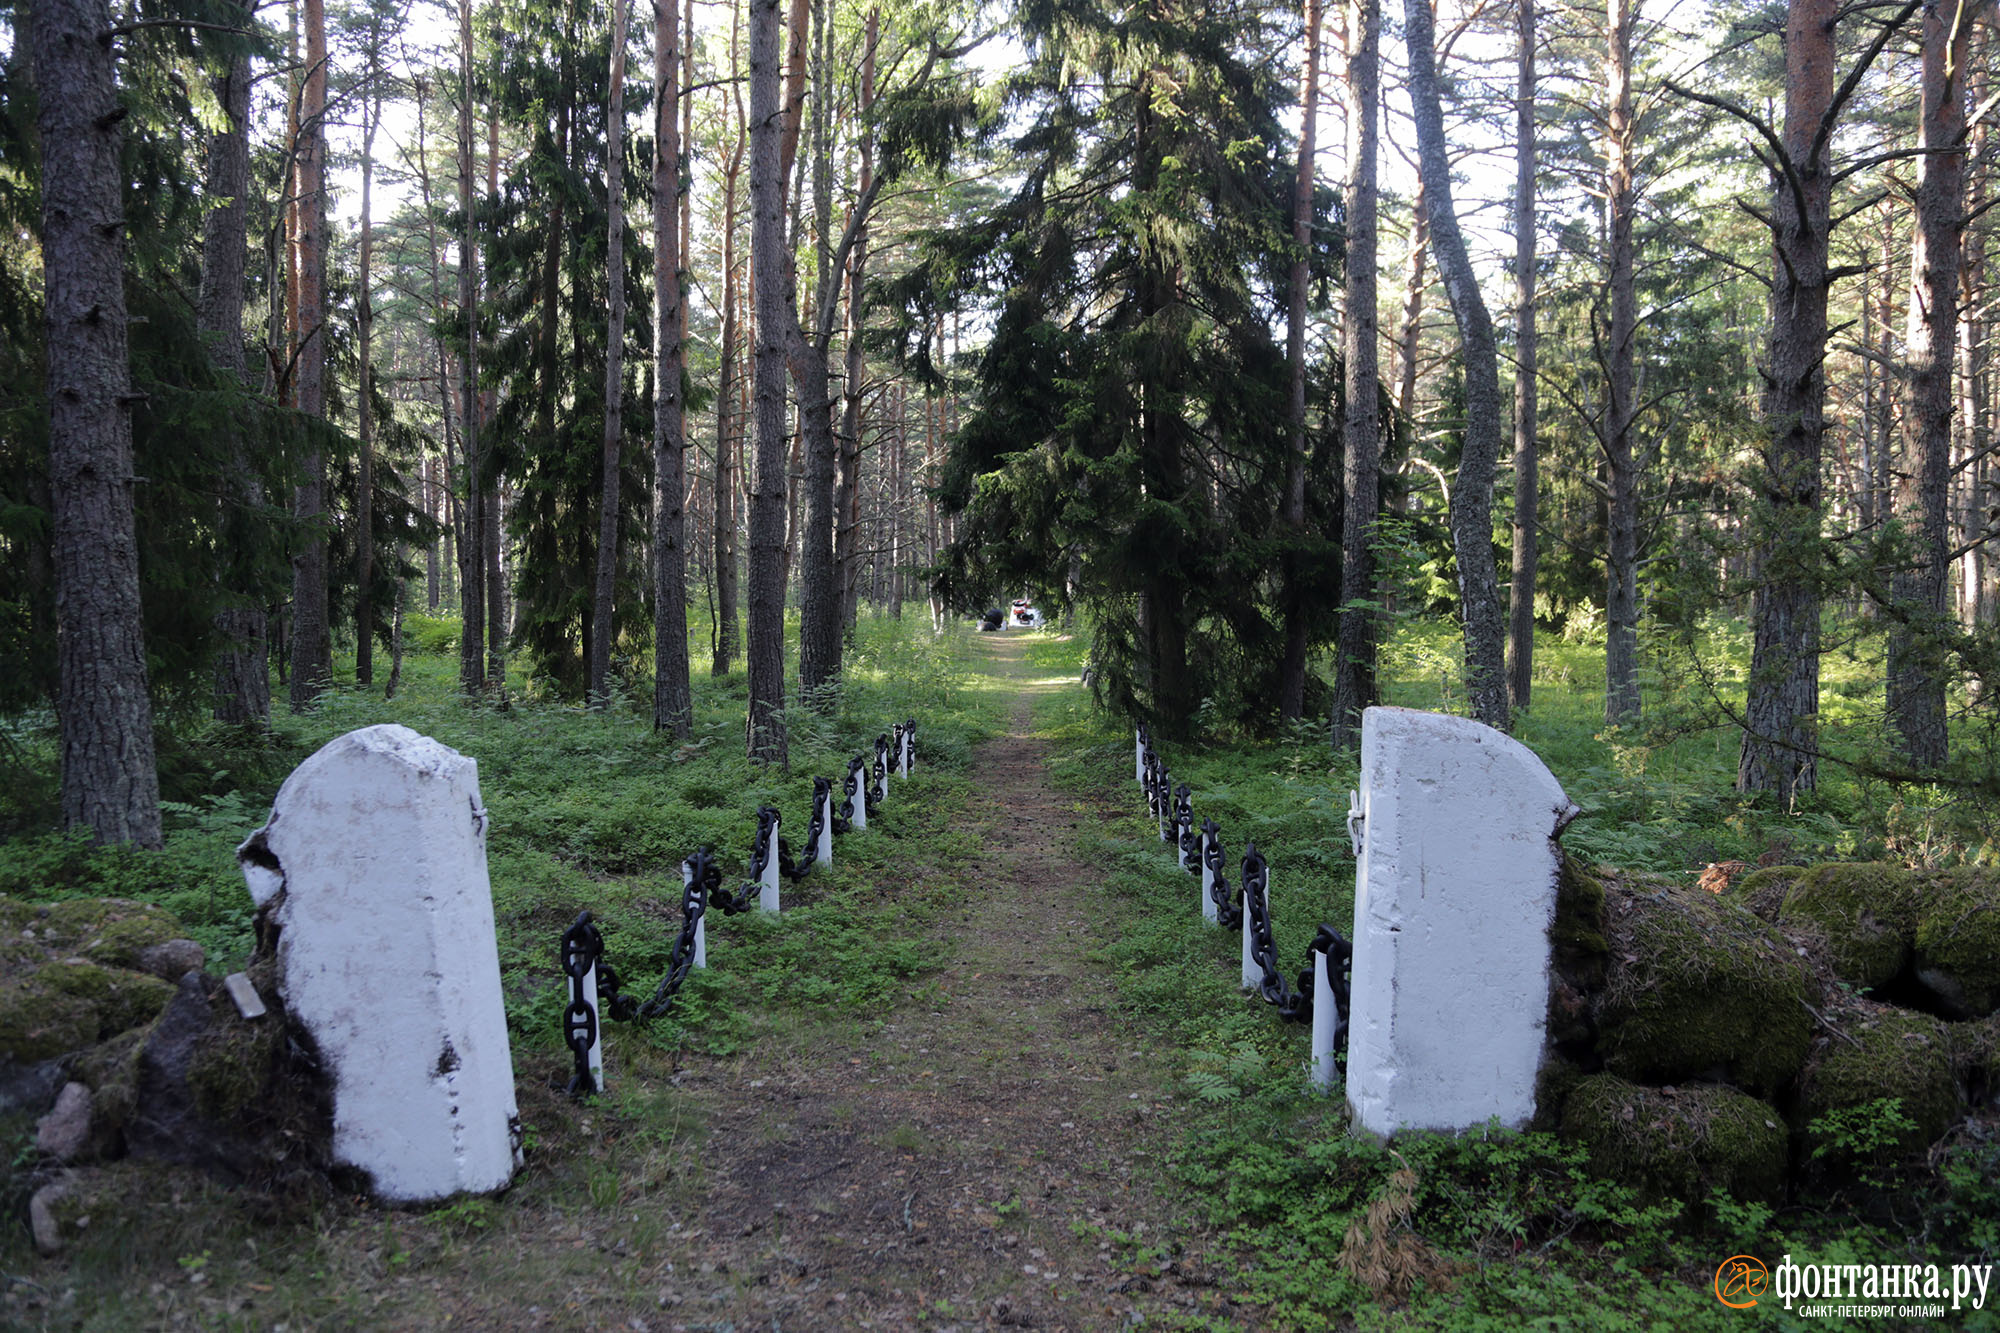 Финское кладбище соседствует с захоронениями советских времен